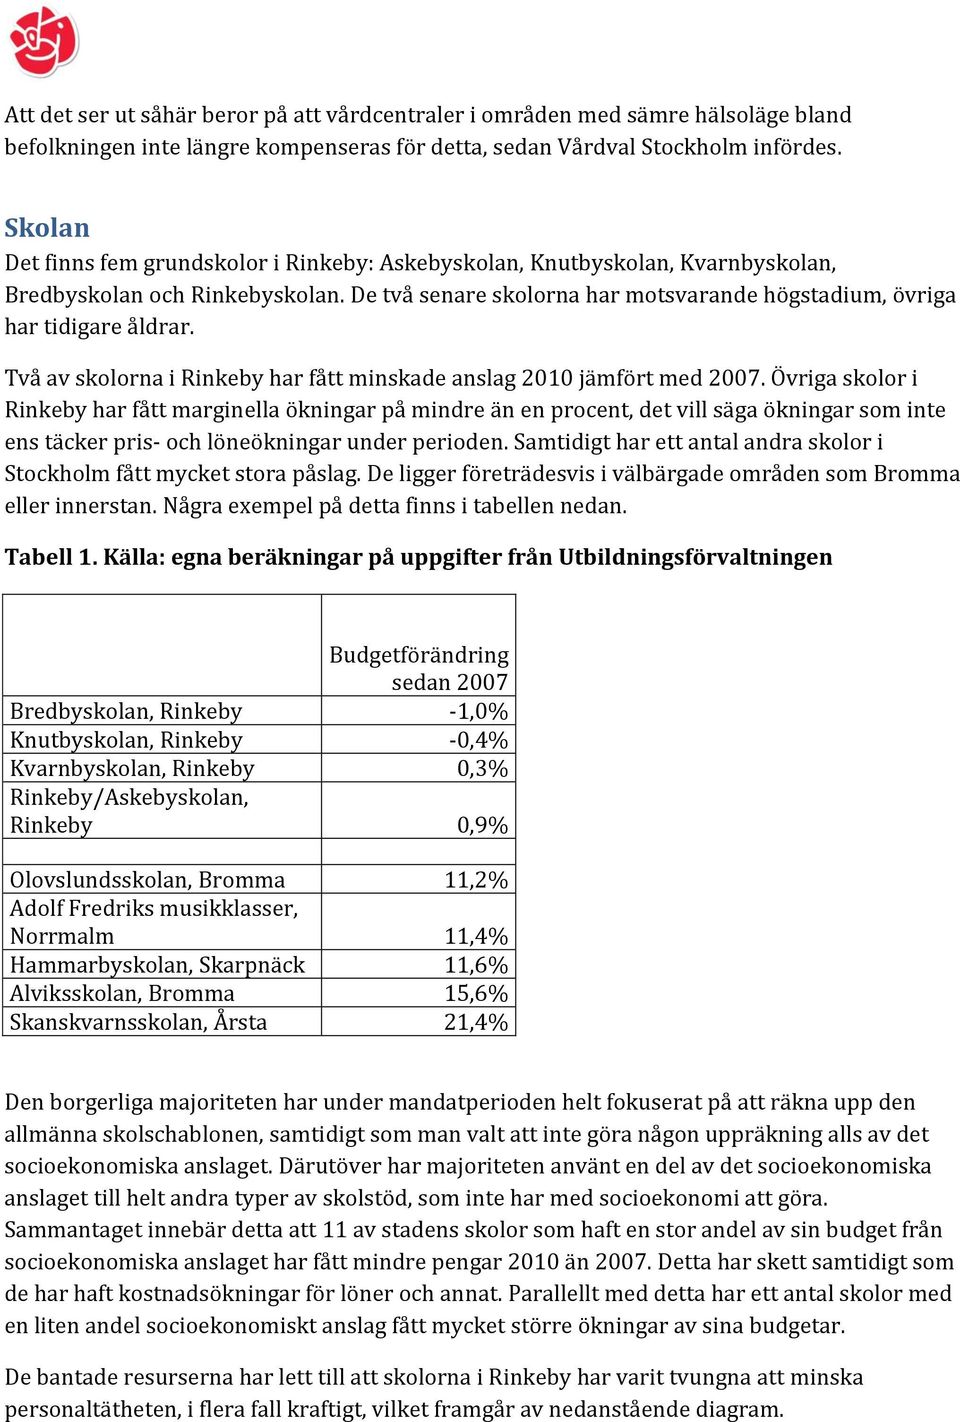 Två av skolorna i Rinkeby har fått minskade anslag 2010 jämfört med 2007.